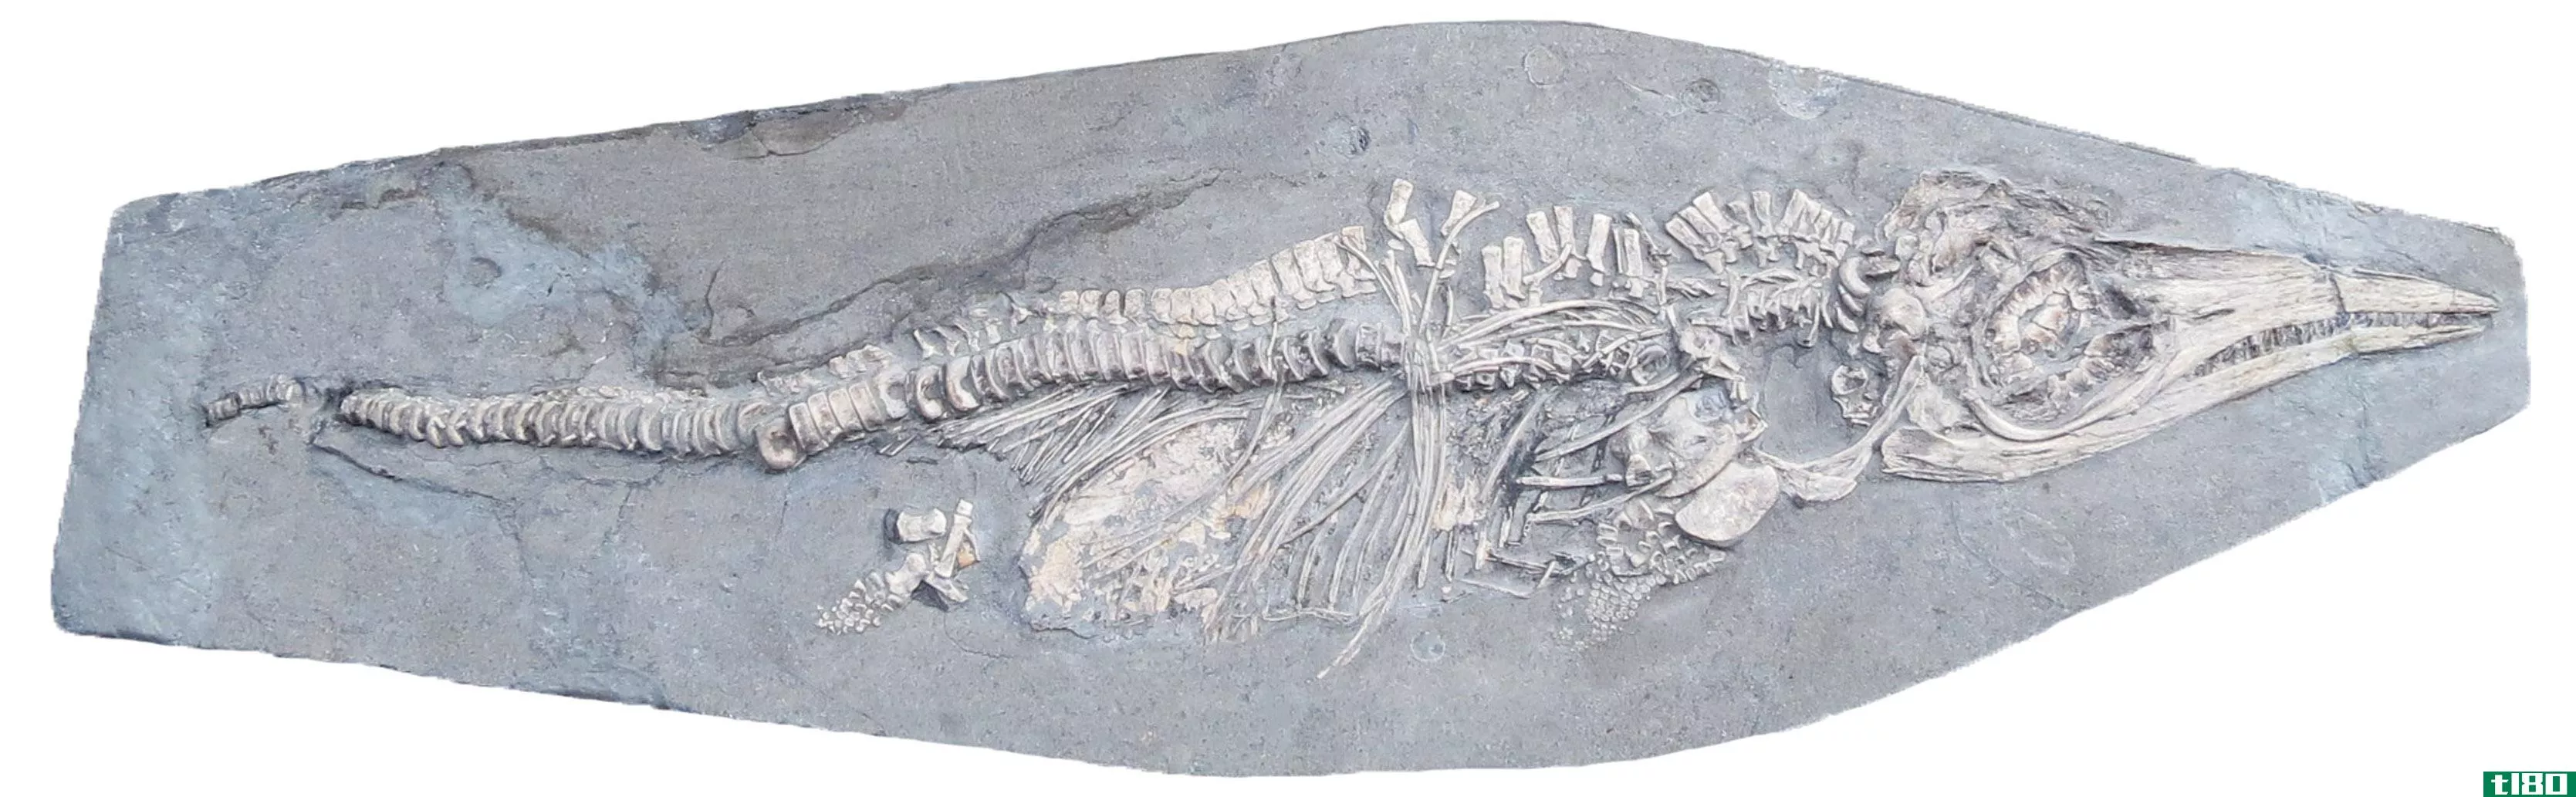 这个两亿年前的鱼龙宝宝死的时候肚子里装满了鱿鱼